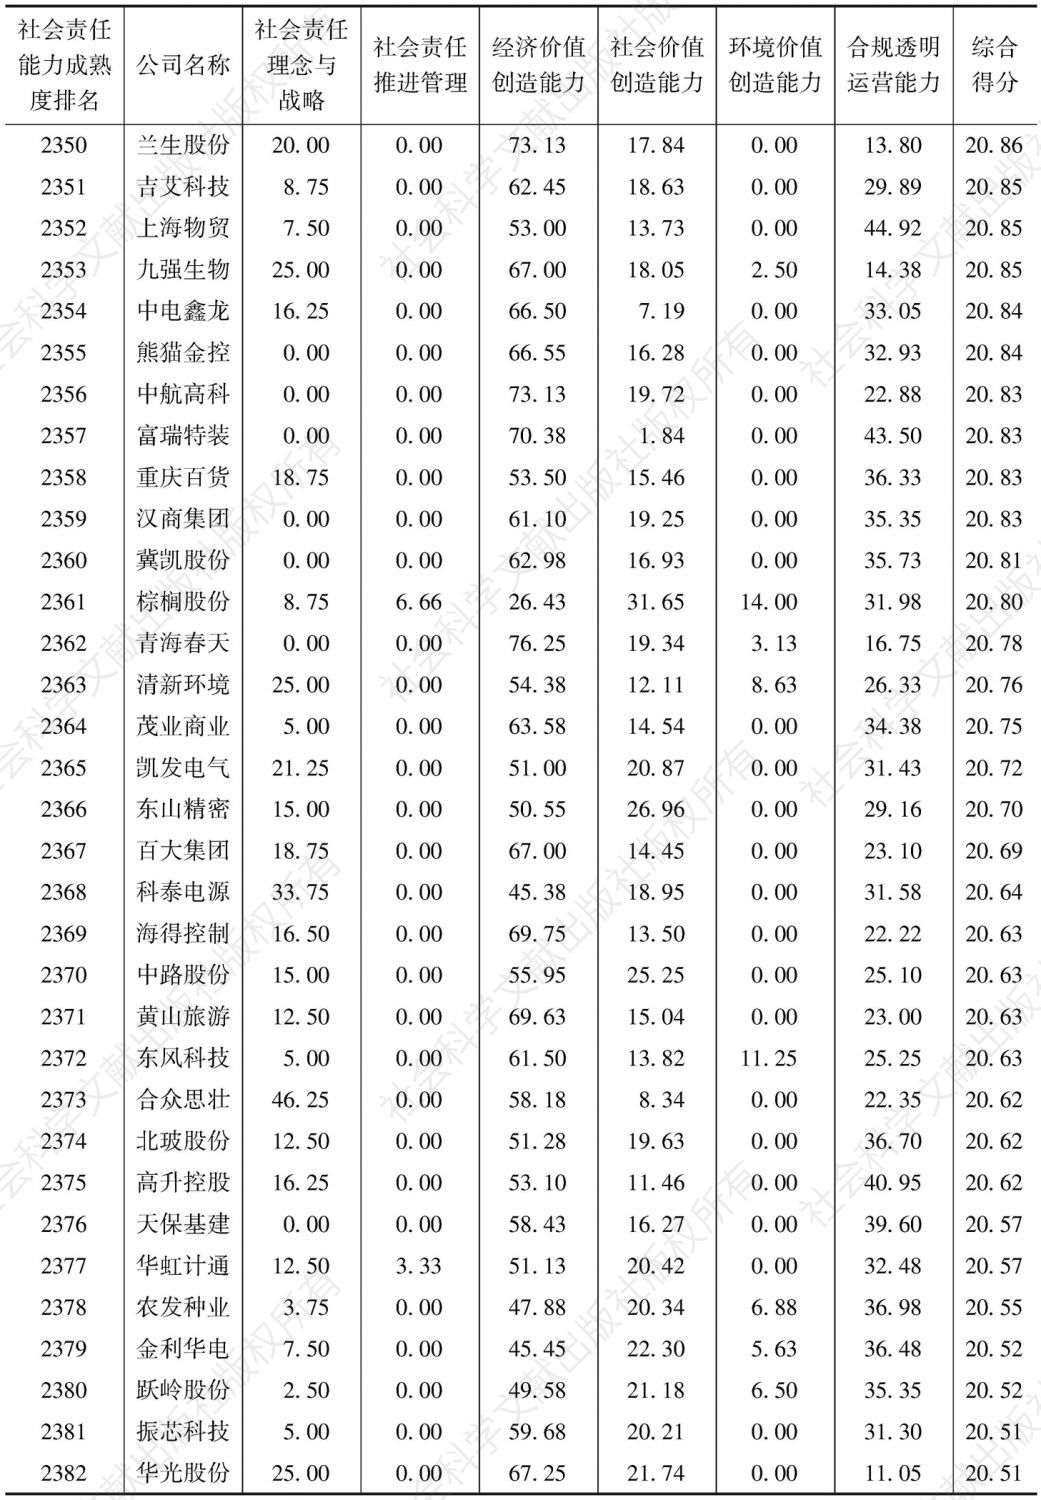 中国上市公司社会责任能力成熟度指数（2016）-续表72